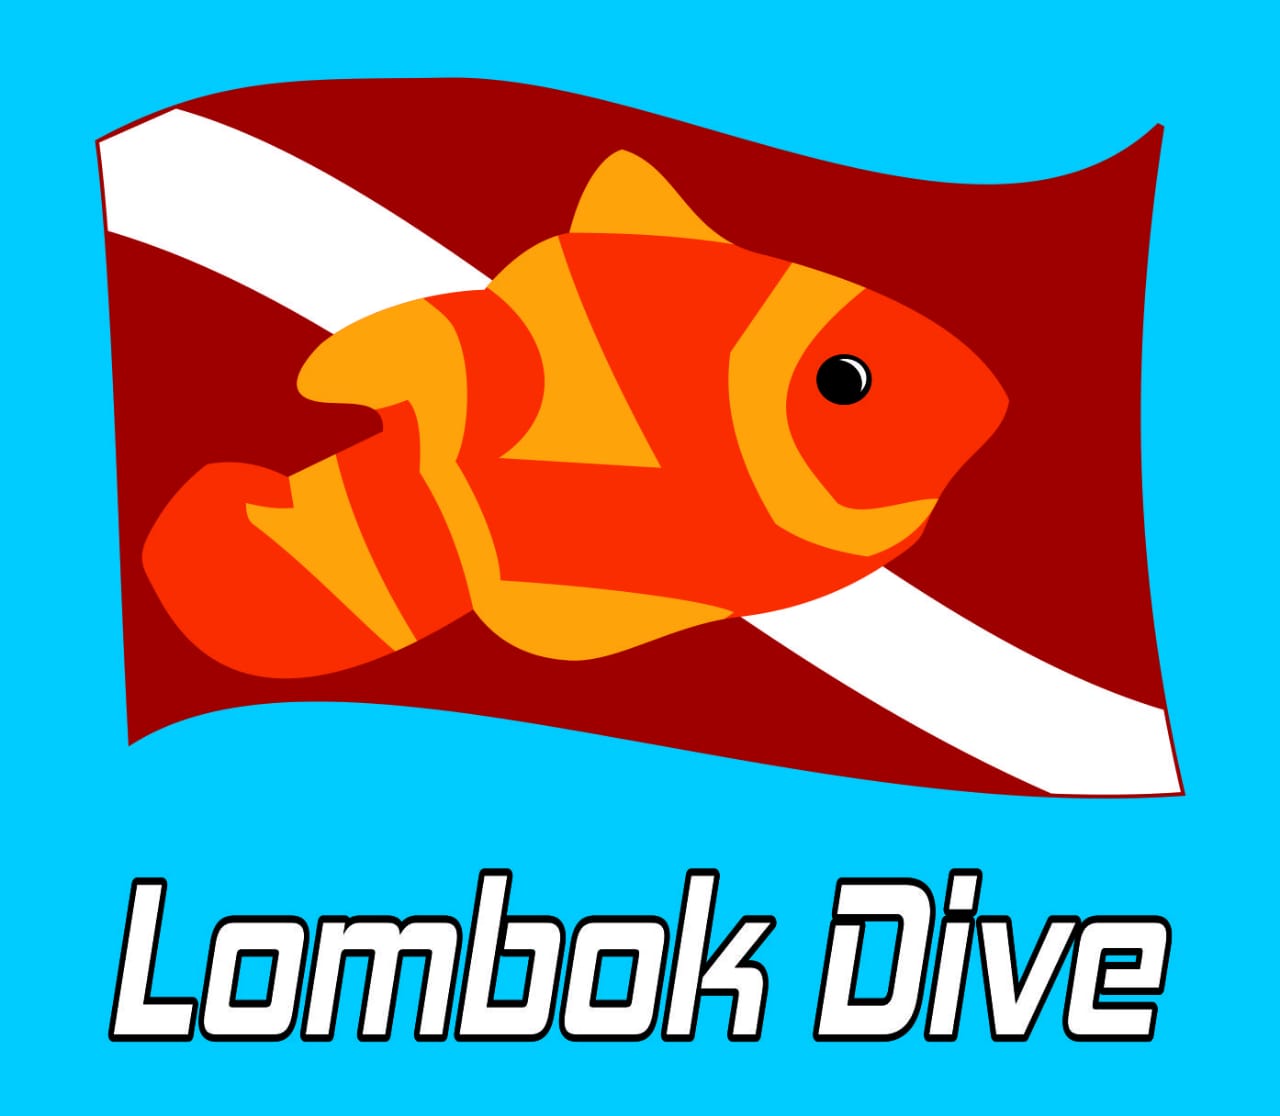 Lombok dive course